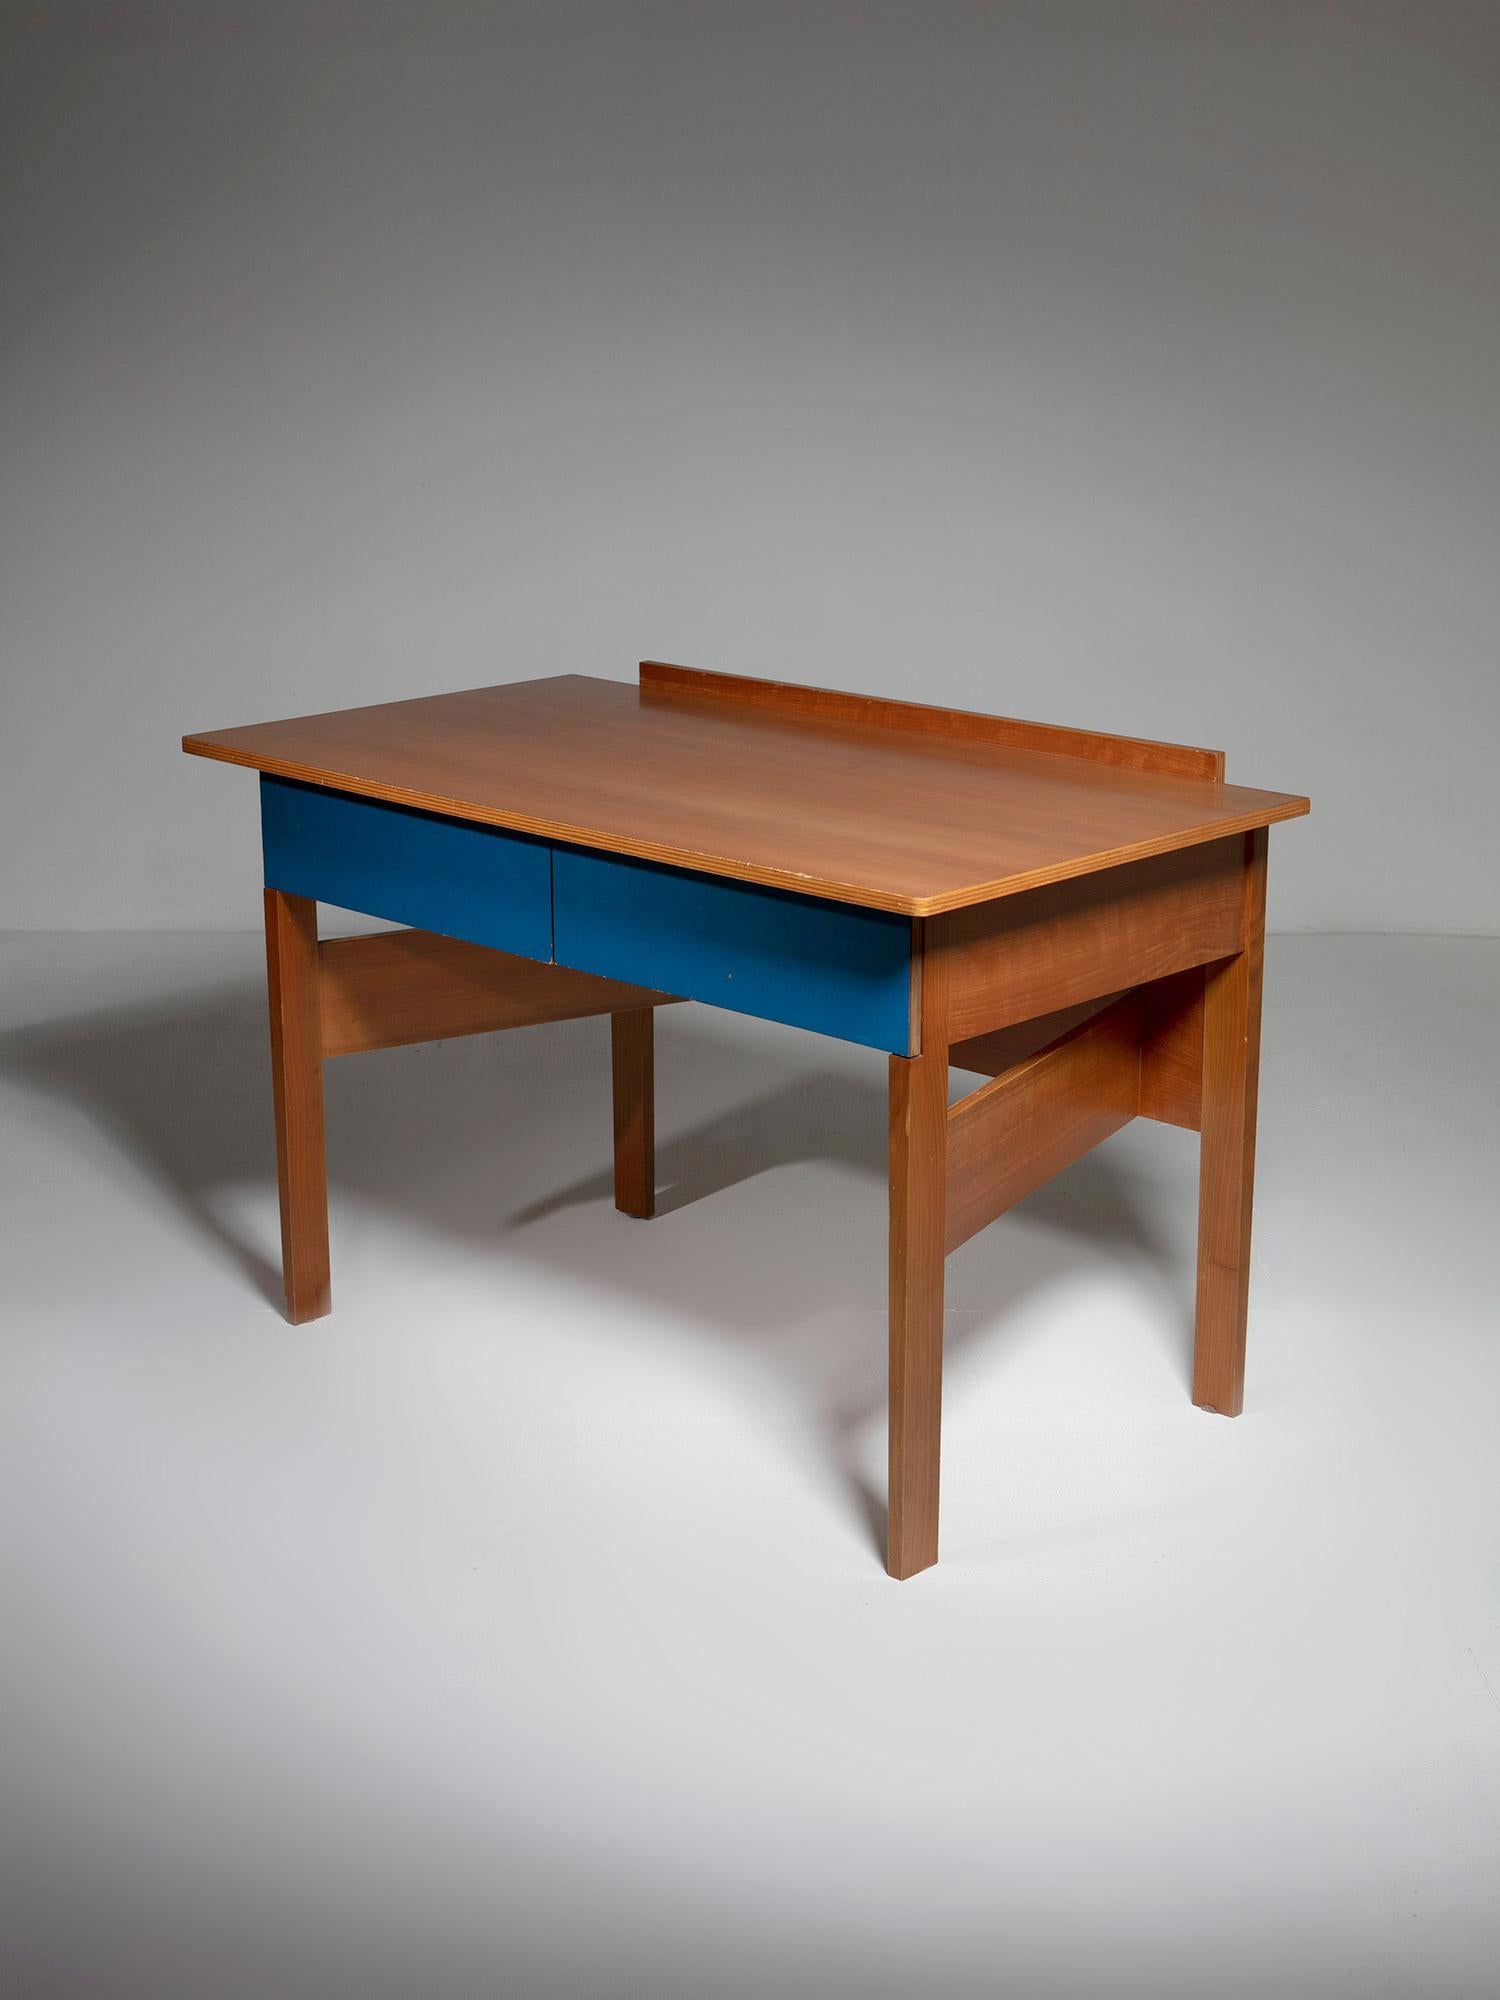 Kompakter Schreibtisch aus Sperrholz im Stil von Gerrit Riettveld.
Geometrische Komposition aus Sperrholzplatten mit Formica-Details für die Schubladen.